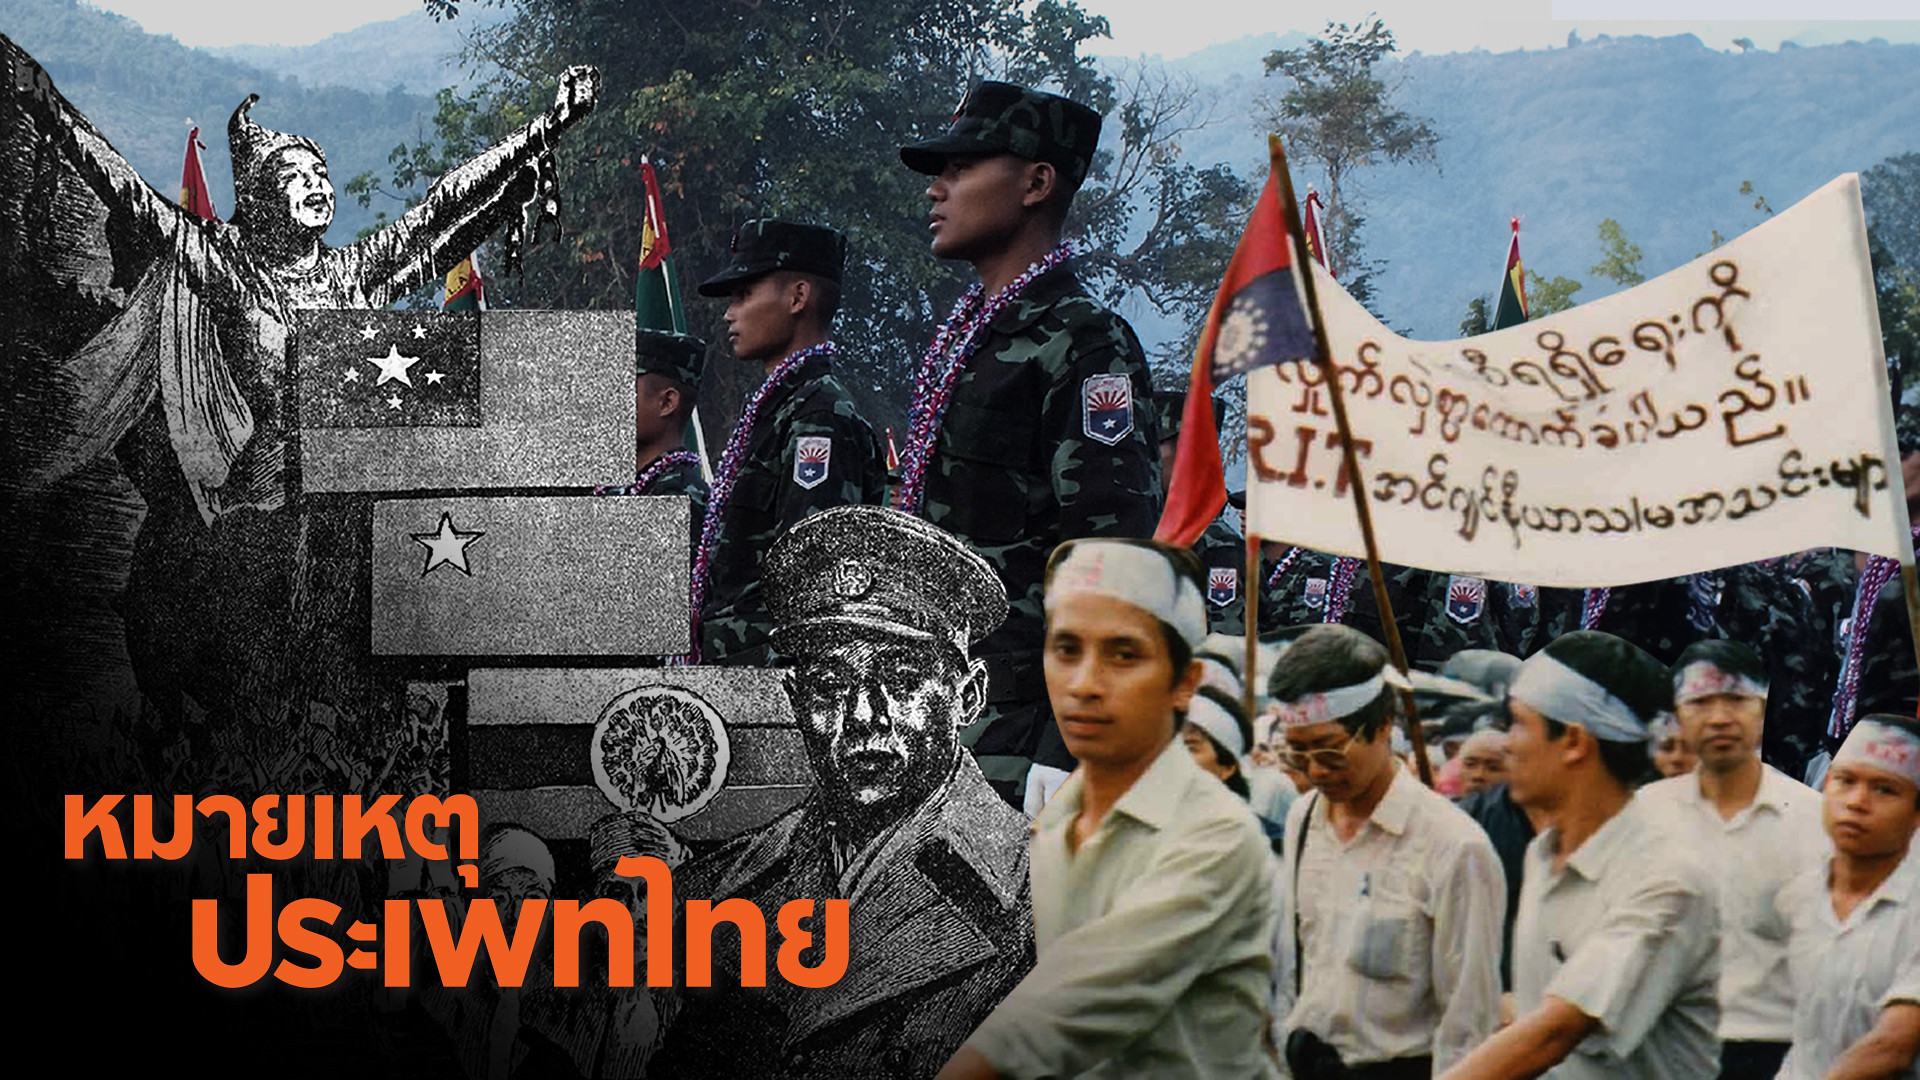 พม่า สงคราม และการสร้างสหพันธรัฐที่ไม่รู้จบ | หมายเหตุประเพทไทย EP.519 [Live]